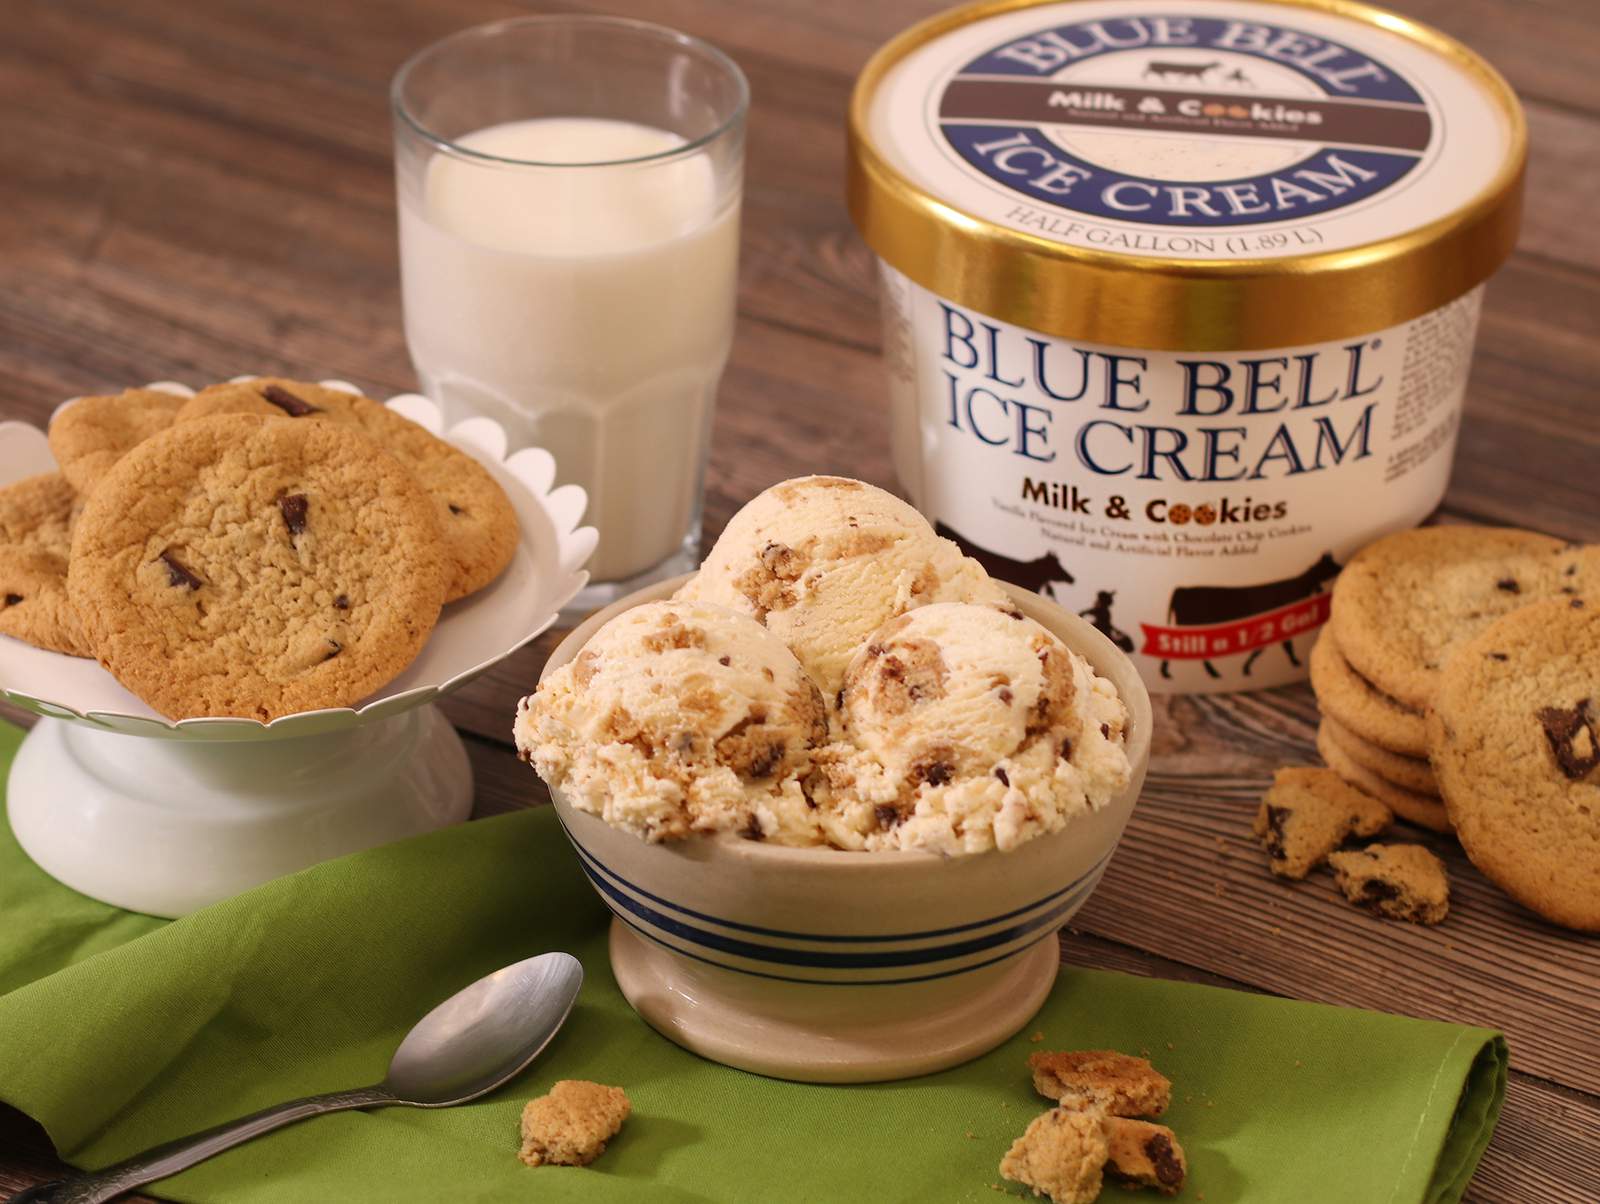 Blue Bell brings back their Milk & Cookies ice cream